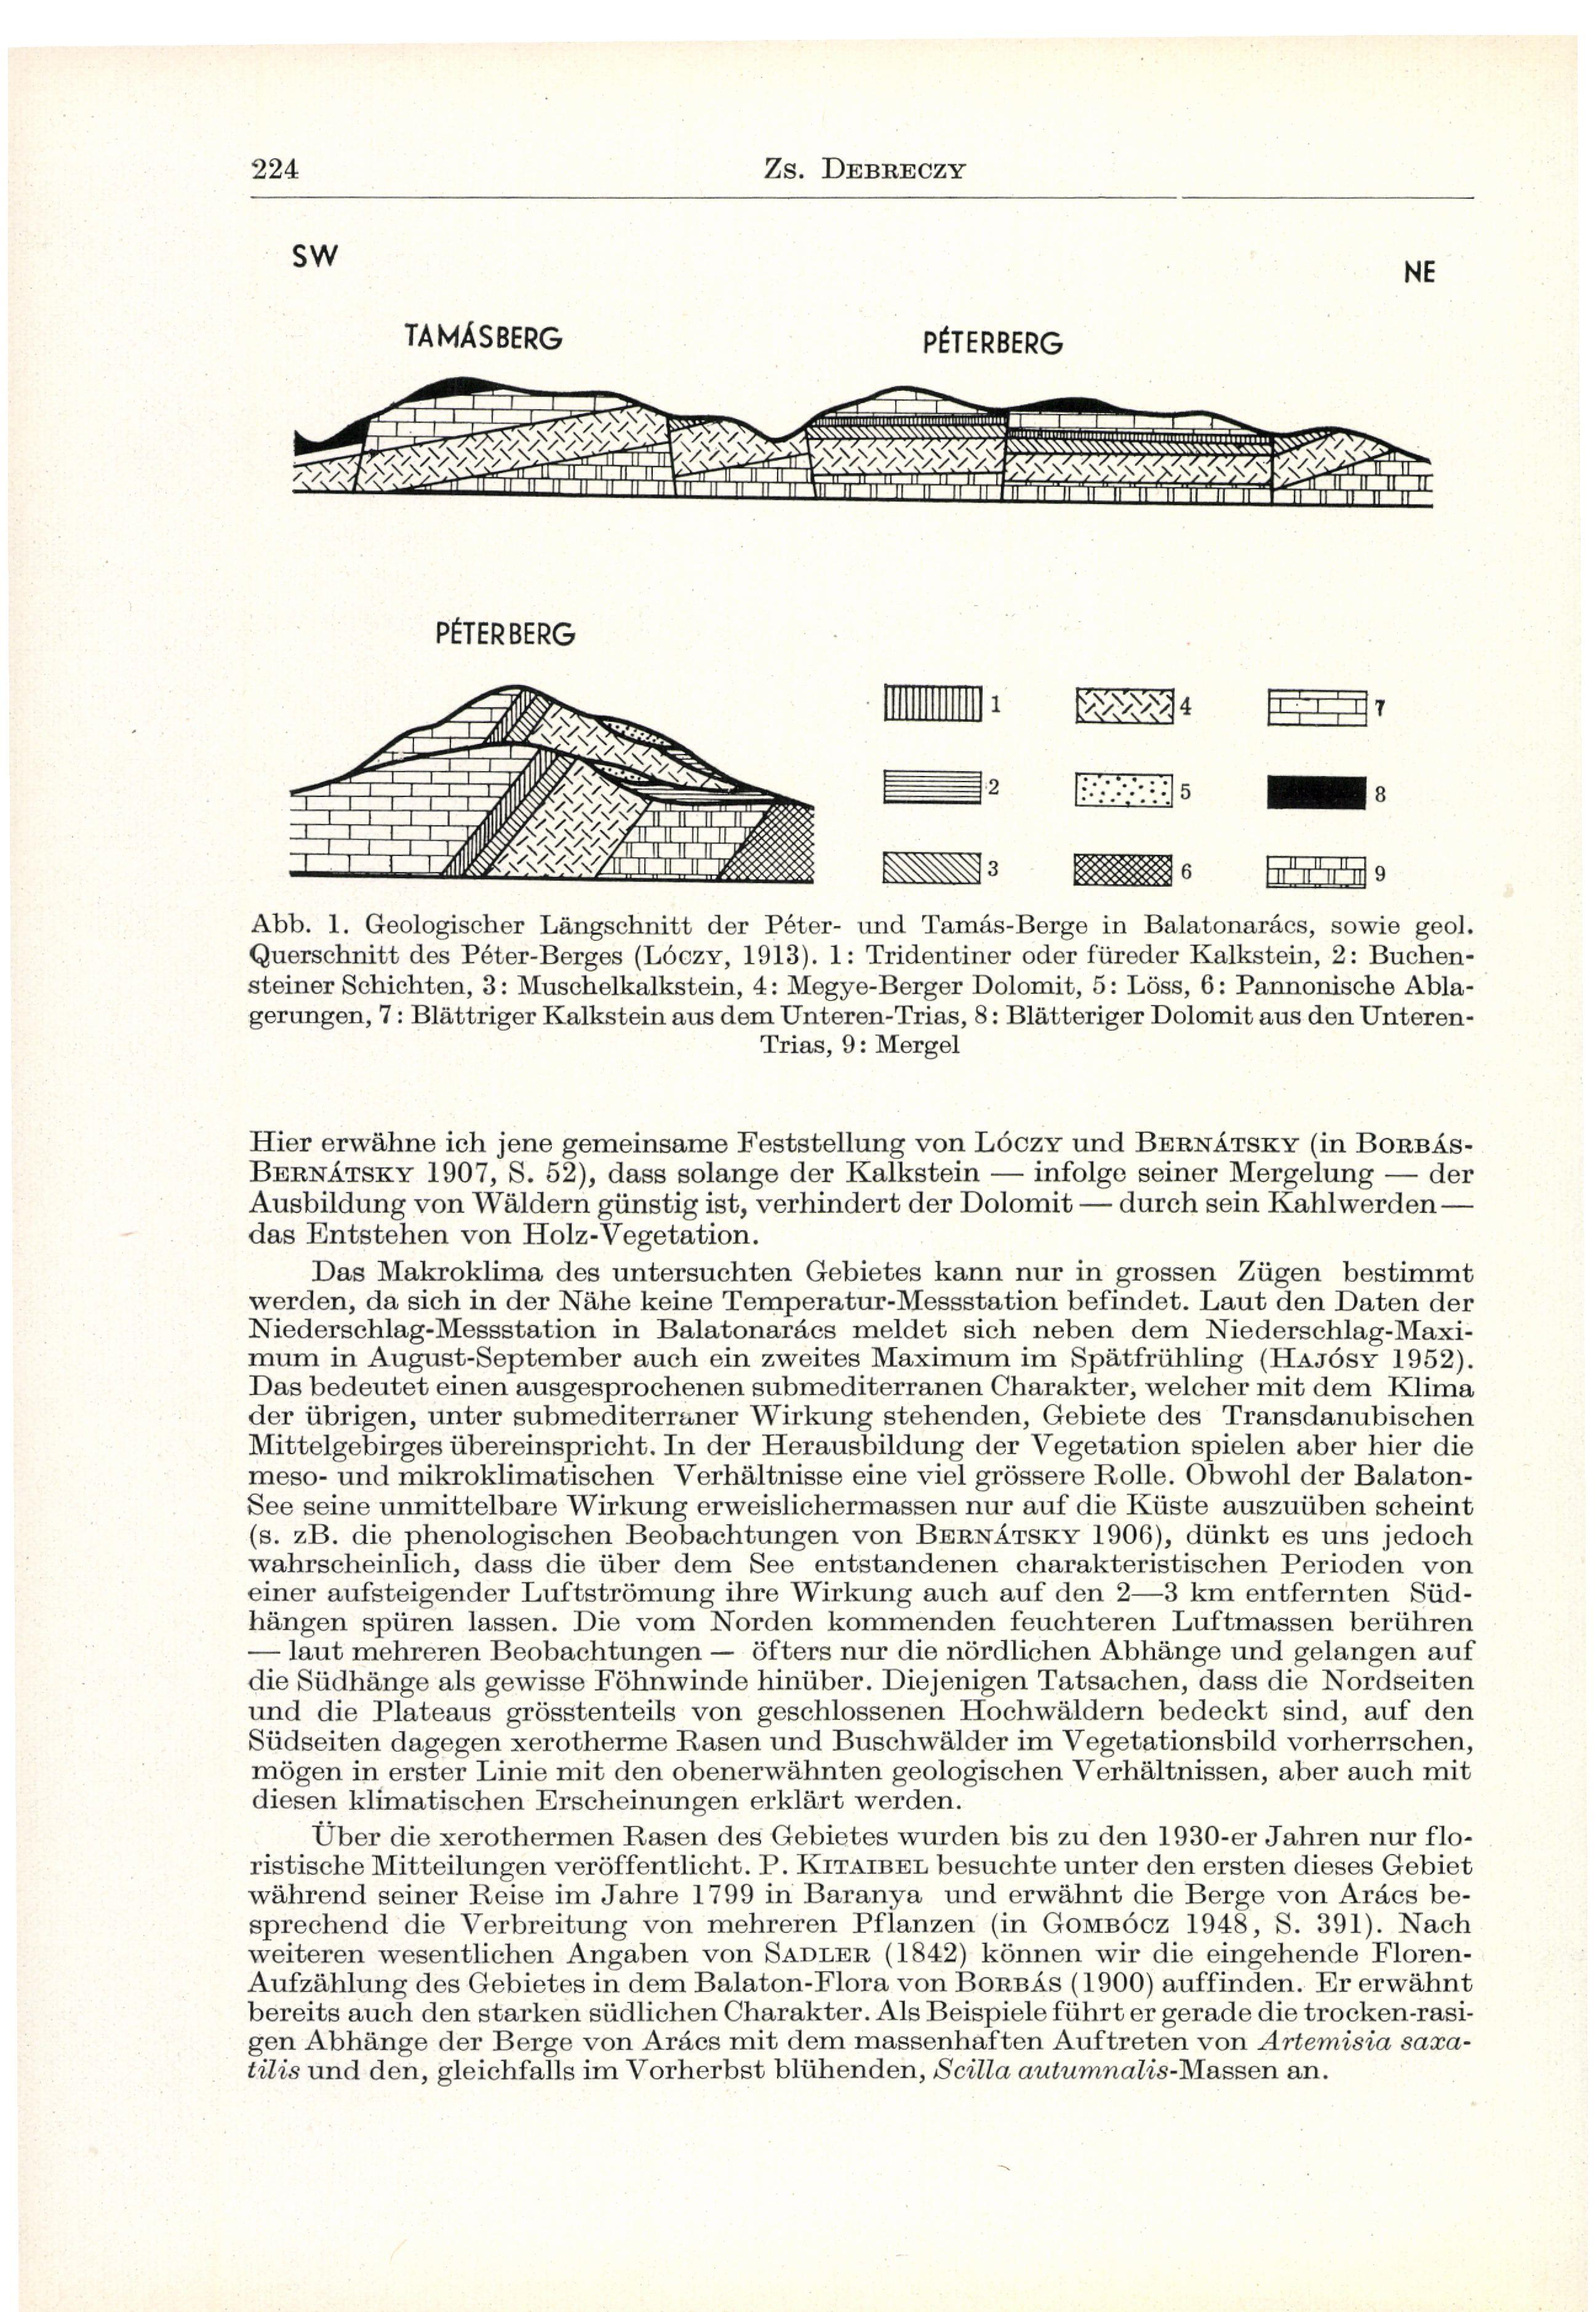 Abb. 1, Geologischer Längschnitt der Péter- und Tamás-Berge in Balatonarács, sowie geol. Querschnitt des Péter-Berges (LÓCZY, 1913).